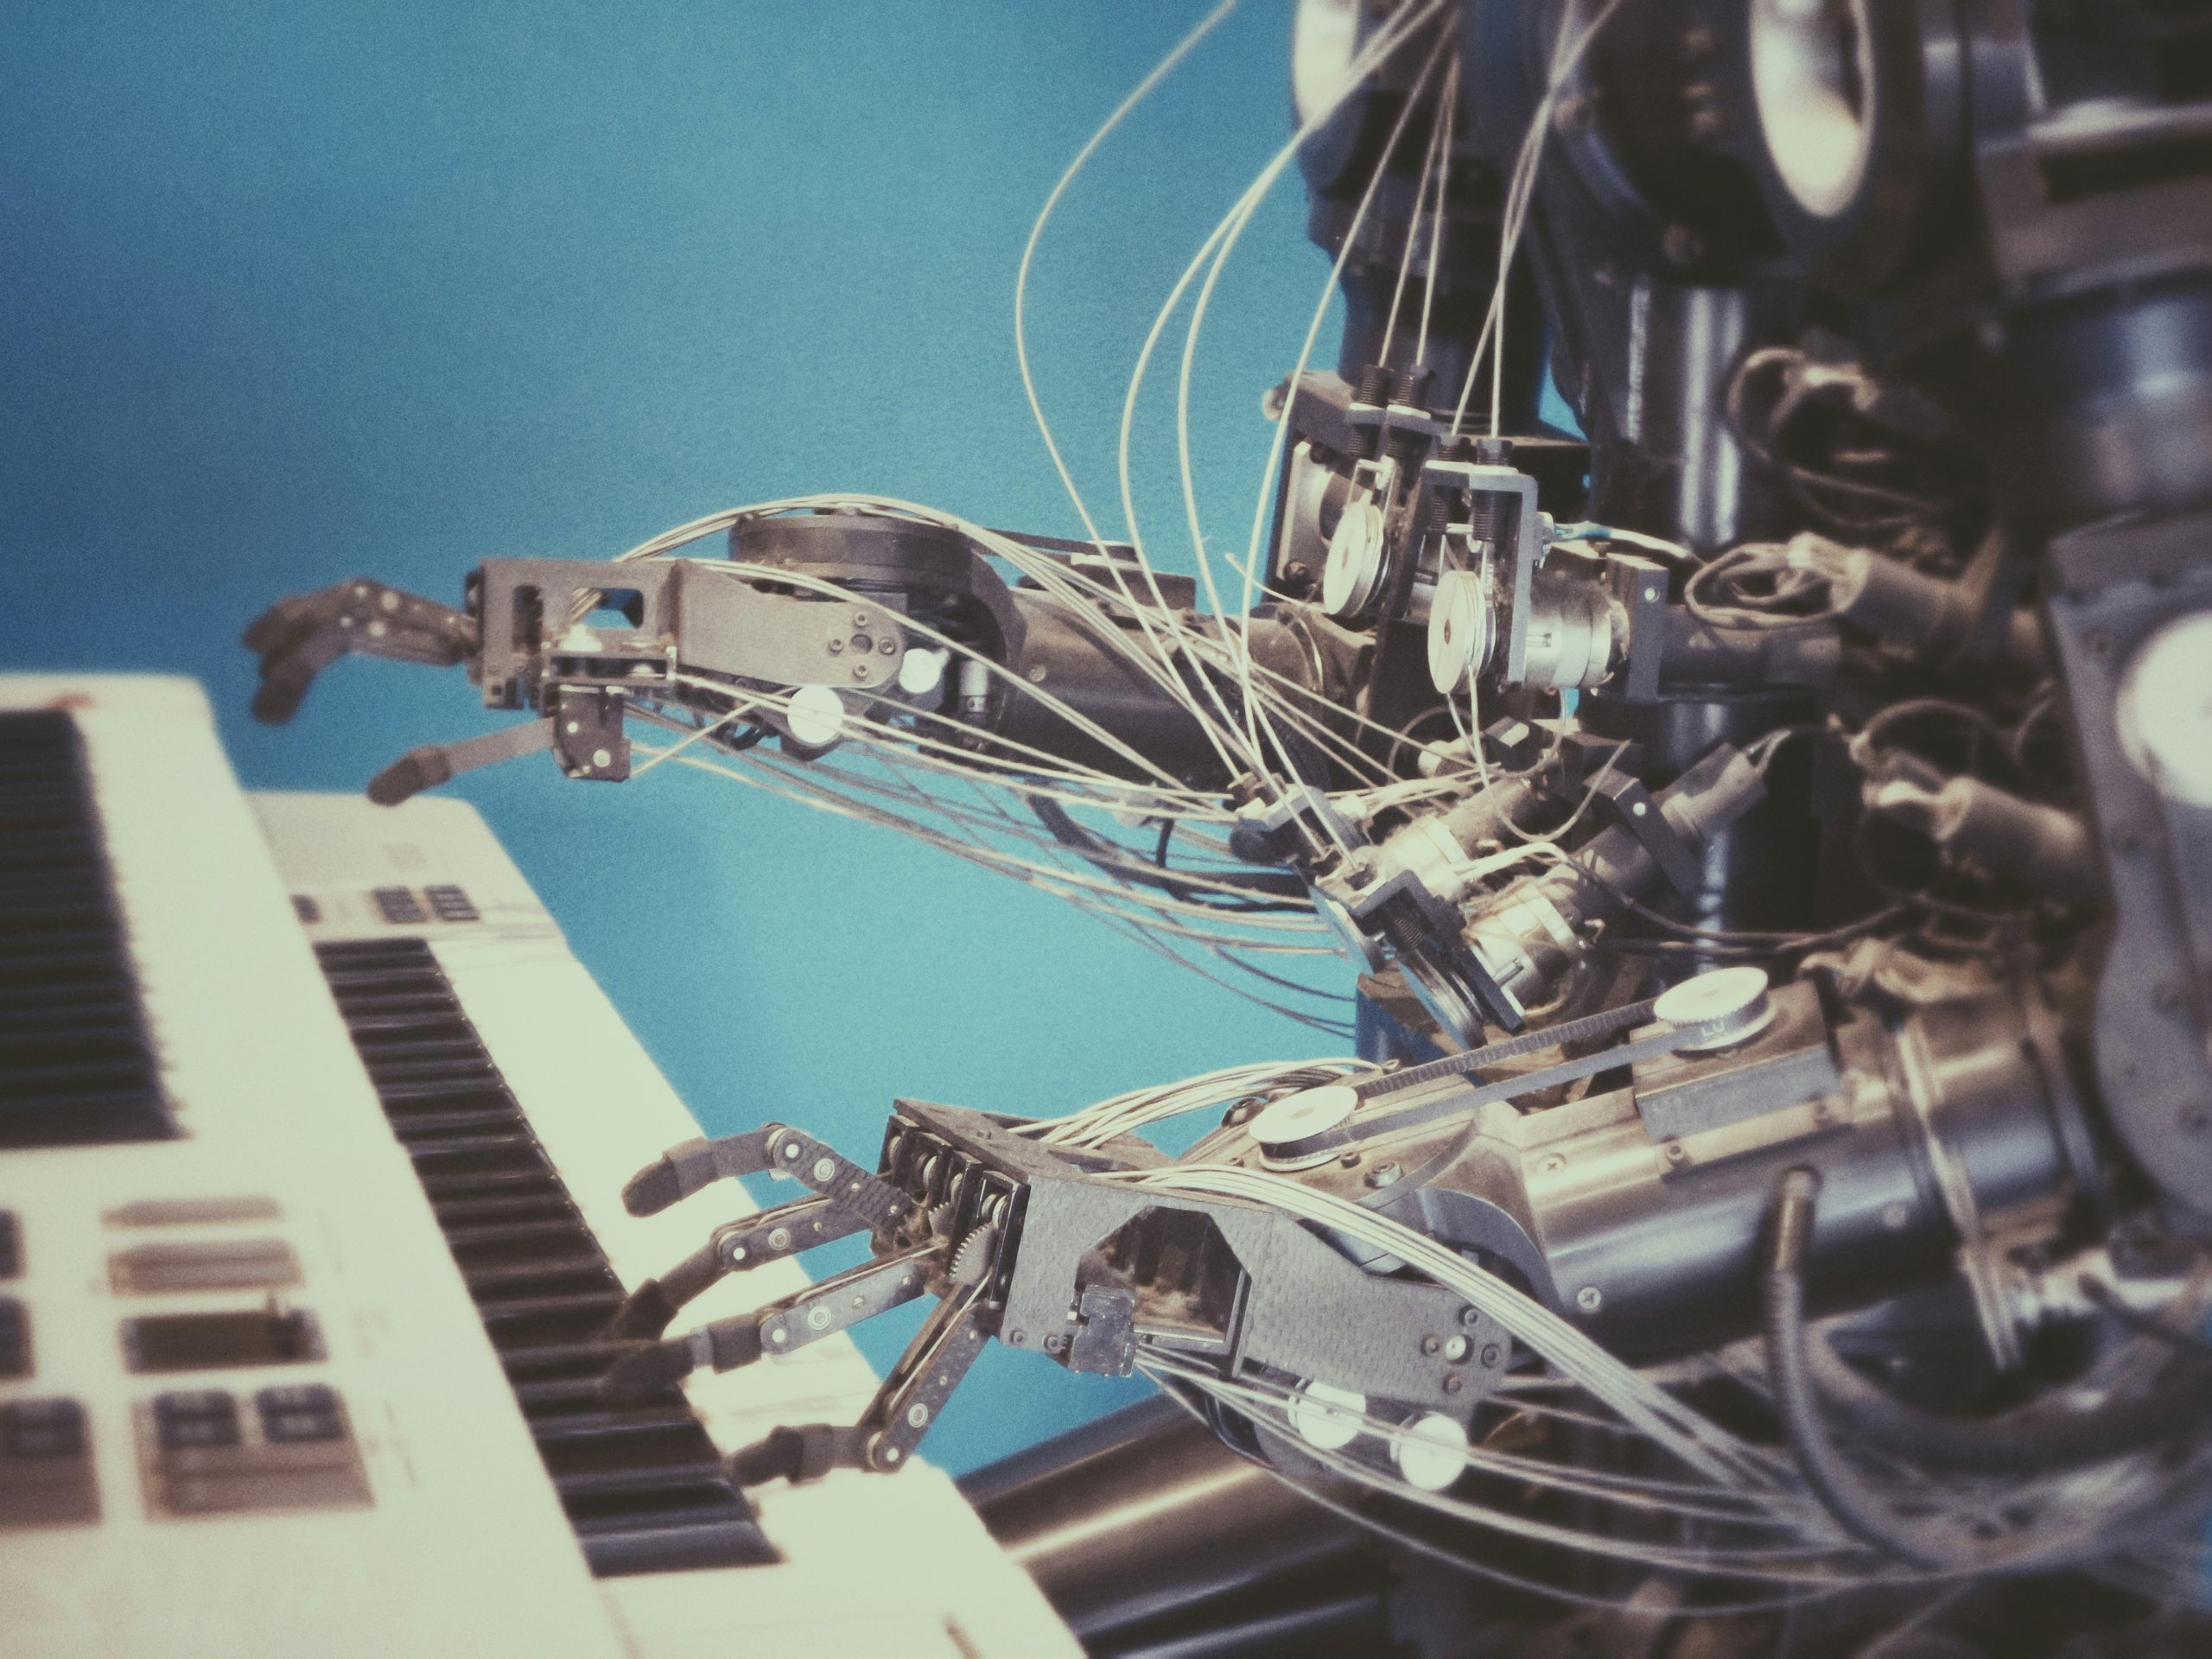 la inteligencia artificial generativa se refiere a sistemas capaces de generar contenido de forma autónoma, como imágenes, música o texto.